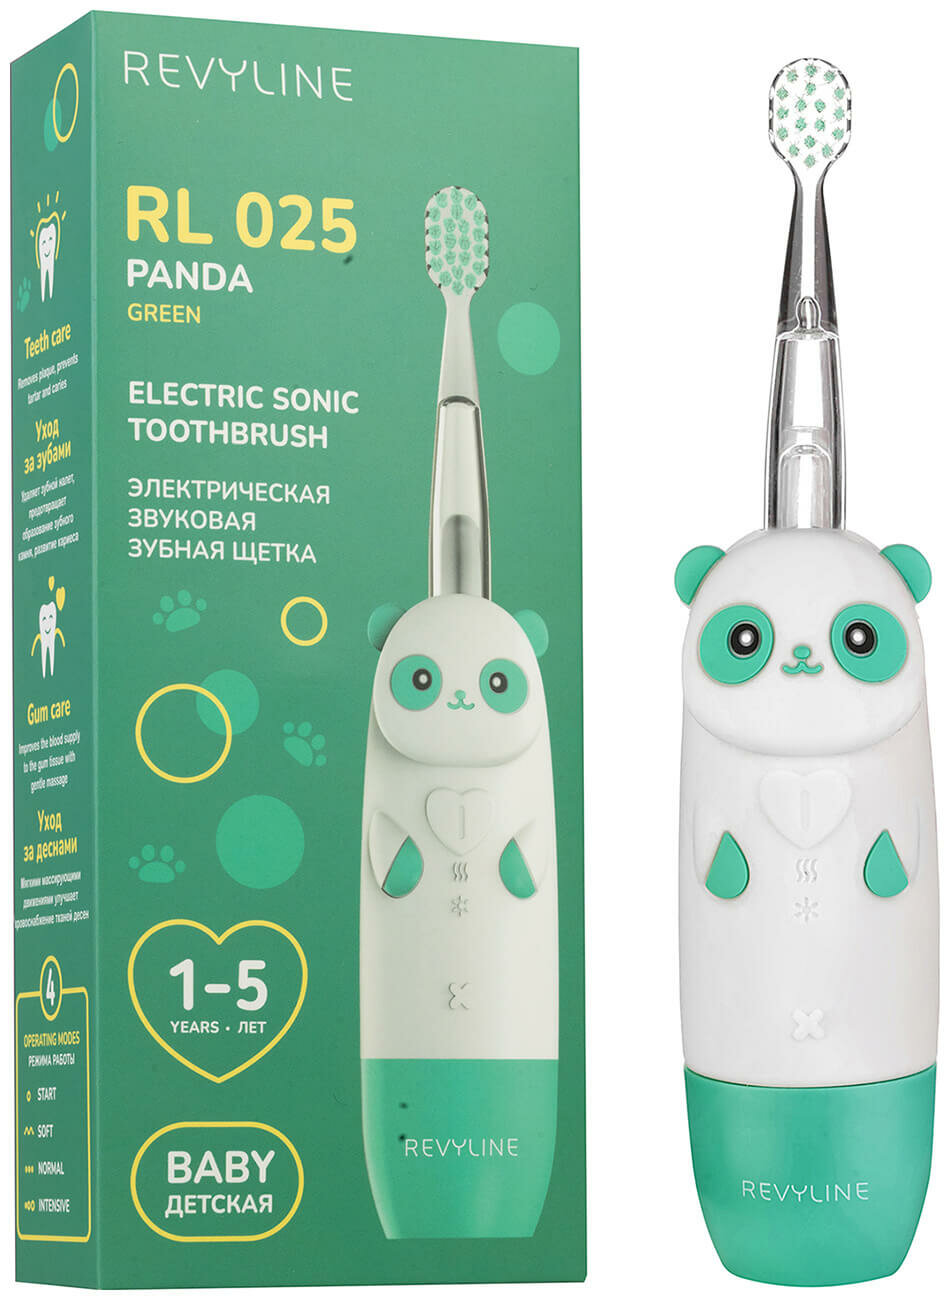 Электрическая зубная щетка Revyline RL 025 Baby Panda зеленая